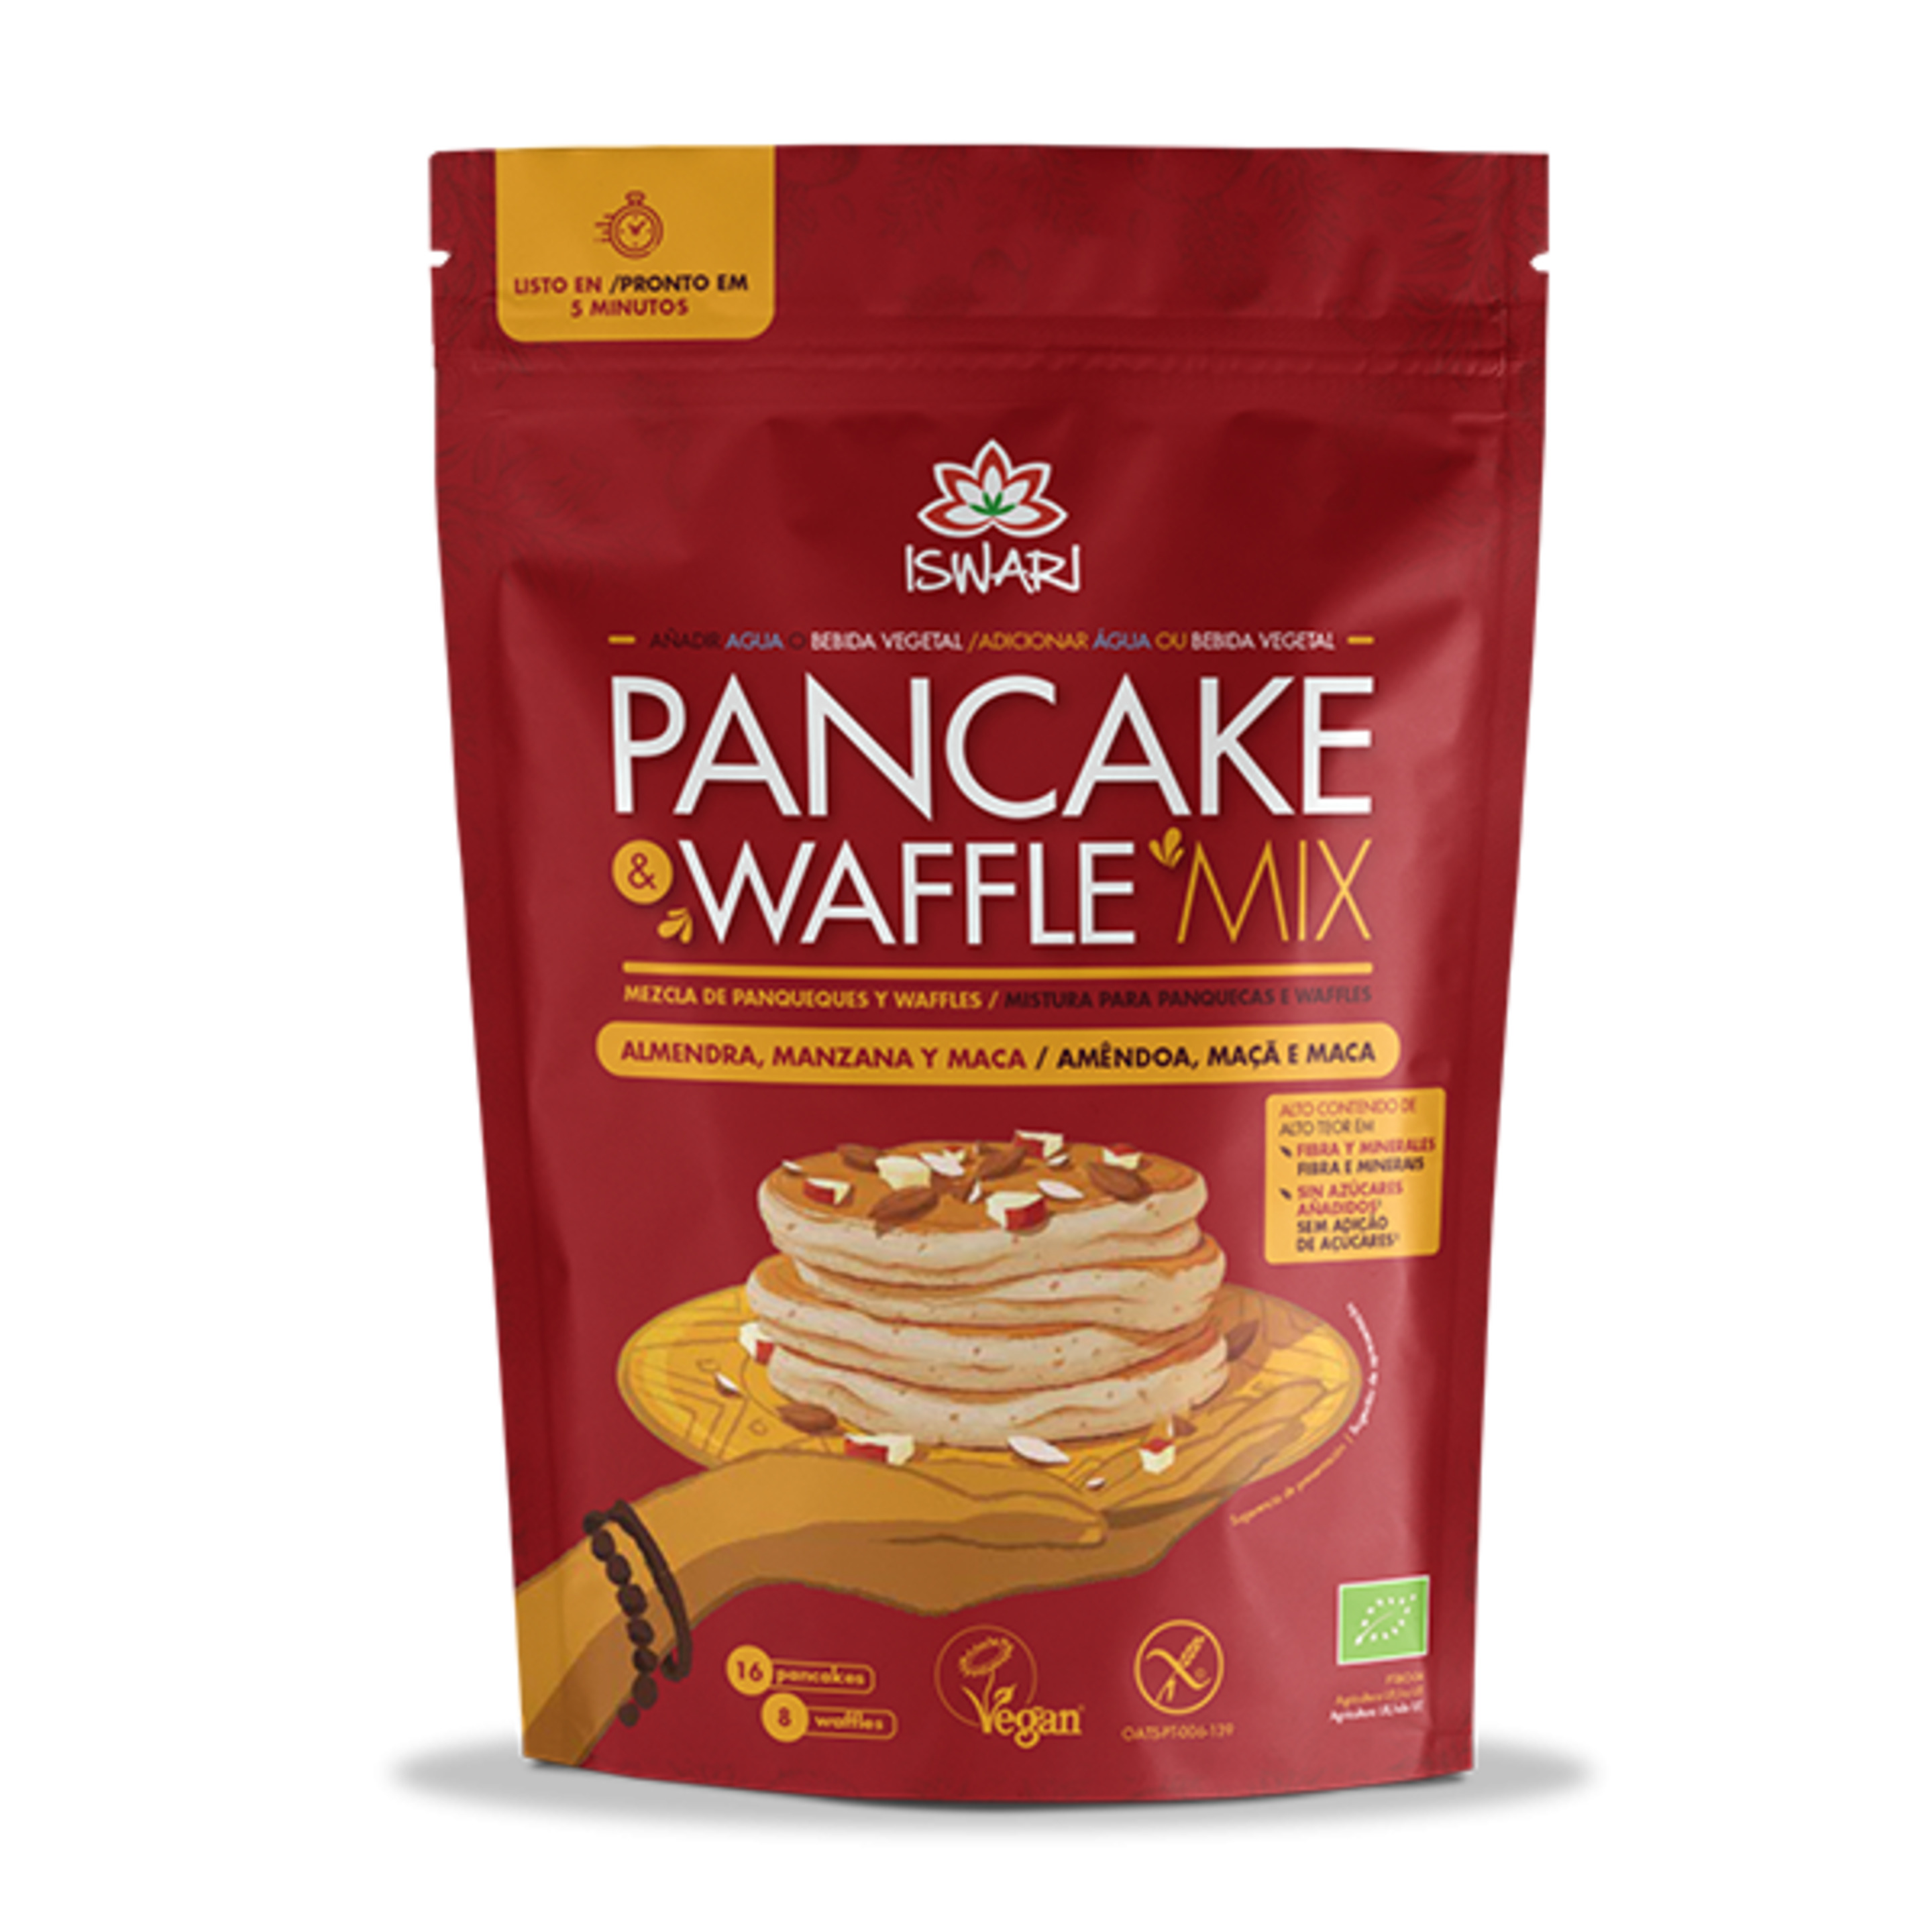 Pancake & Waffle Mix - Almendra, Manzana Y Maca